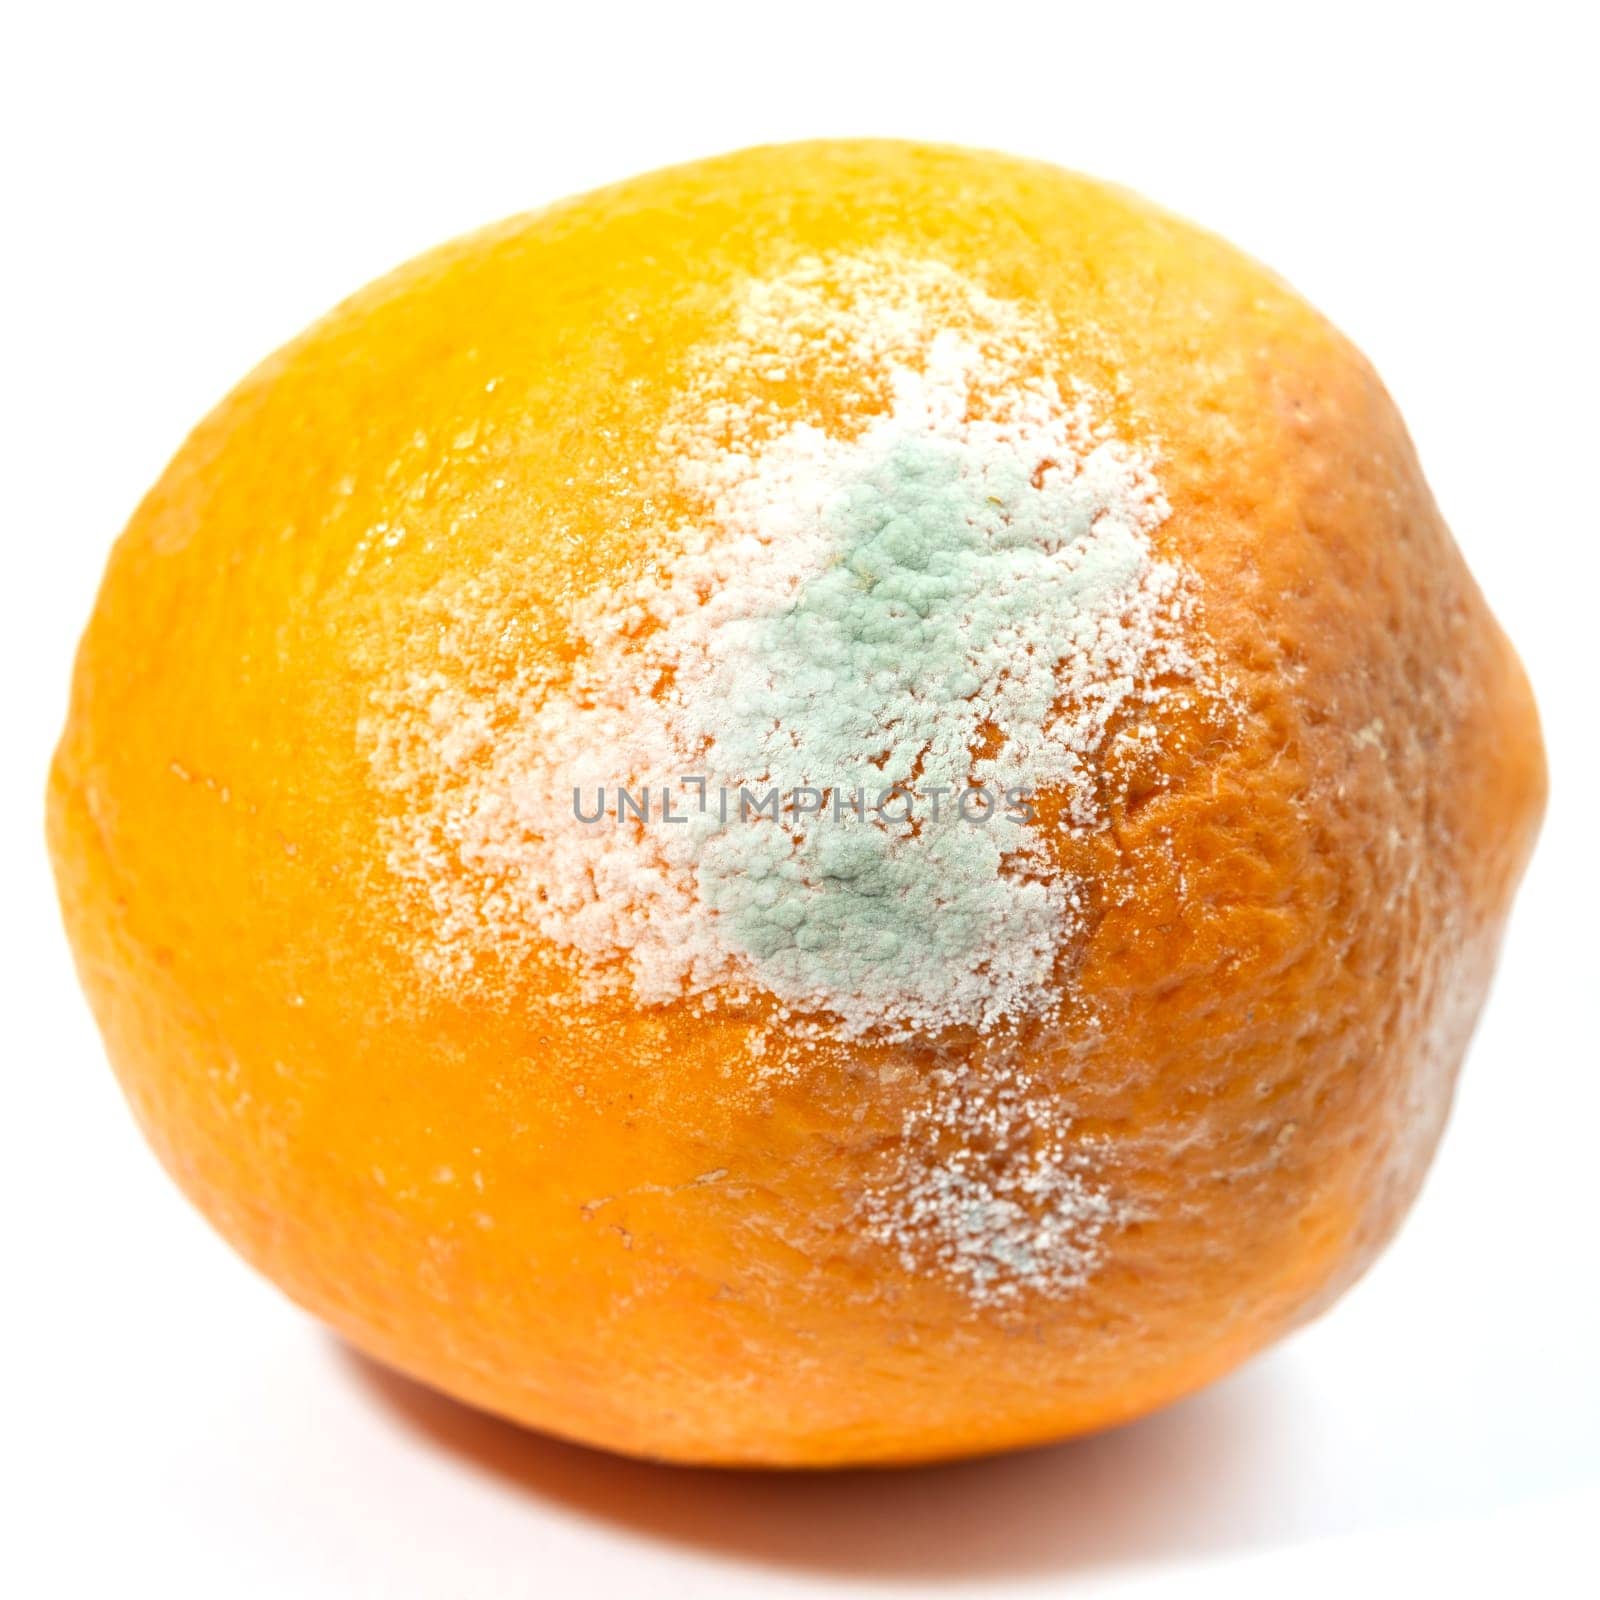 The big orange started to get moldy by Serhii_Voroshchuk